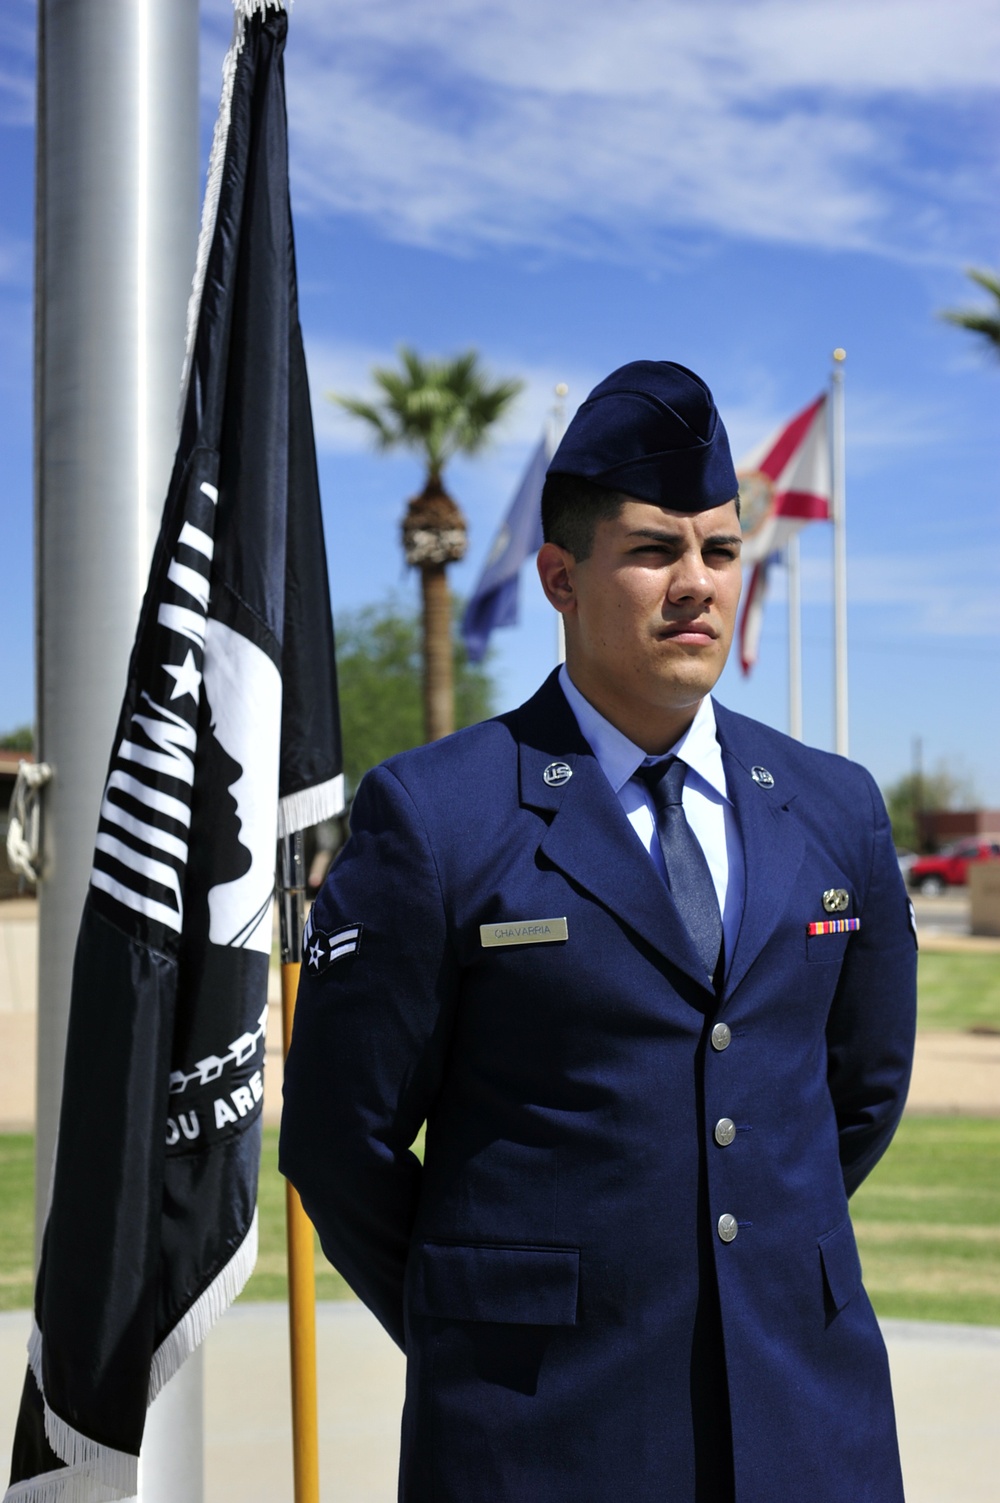 Luke Airman guards POW/MIA flag